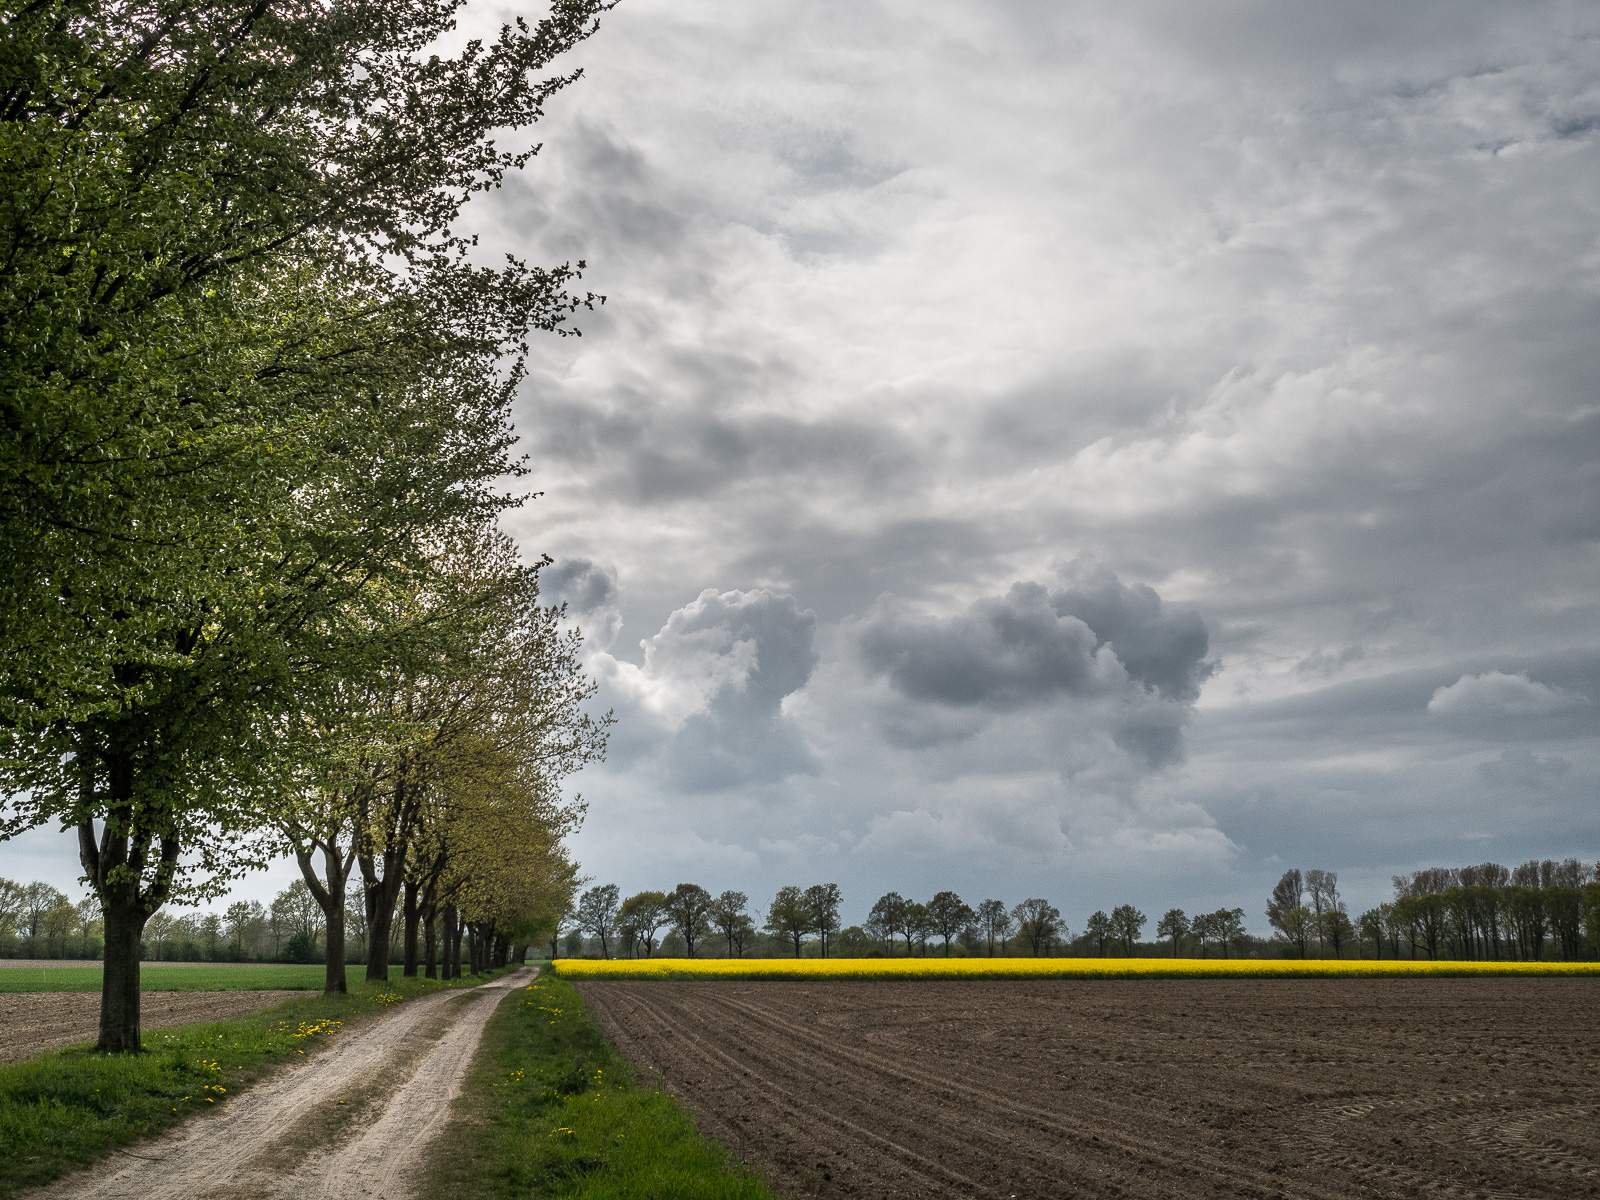 Von links vorn führt ein Sandweg in die Tiefe des Bildes. Links gesäumt von einer Baumreihe, rechts von einem Feld, das noch nicht bewachsen ist. Im Hintergrund ein schmaler Streifen gelber Raps. Darüber dunkle Cumulus-Wolken und dramatisch beleuchteter Himmel.